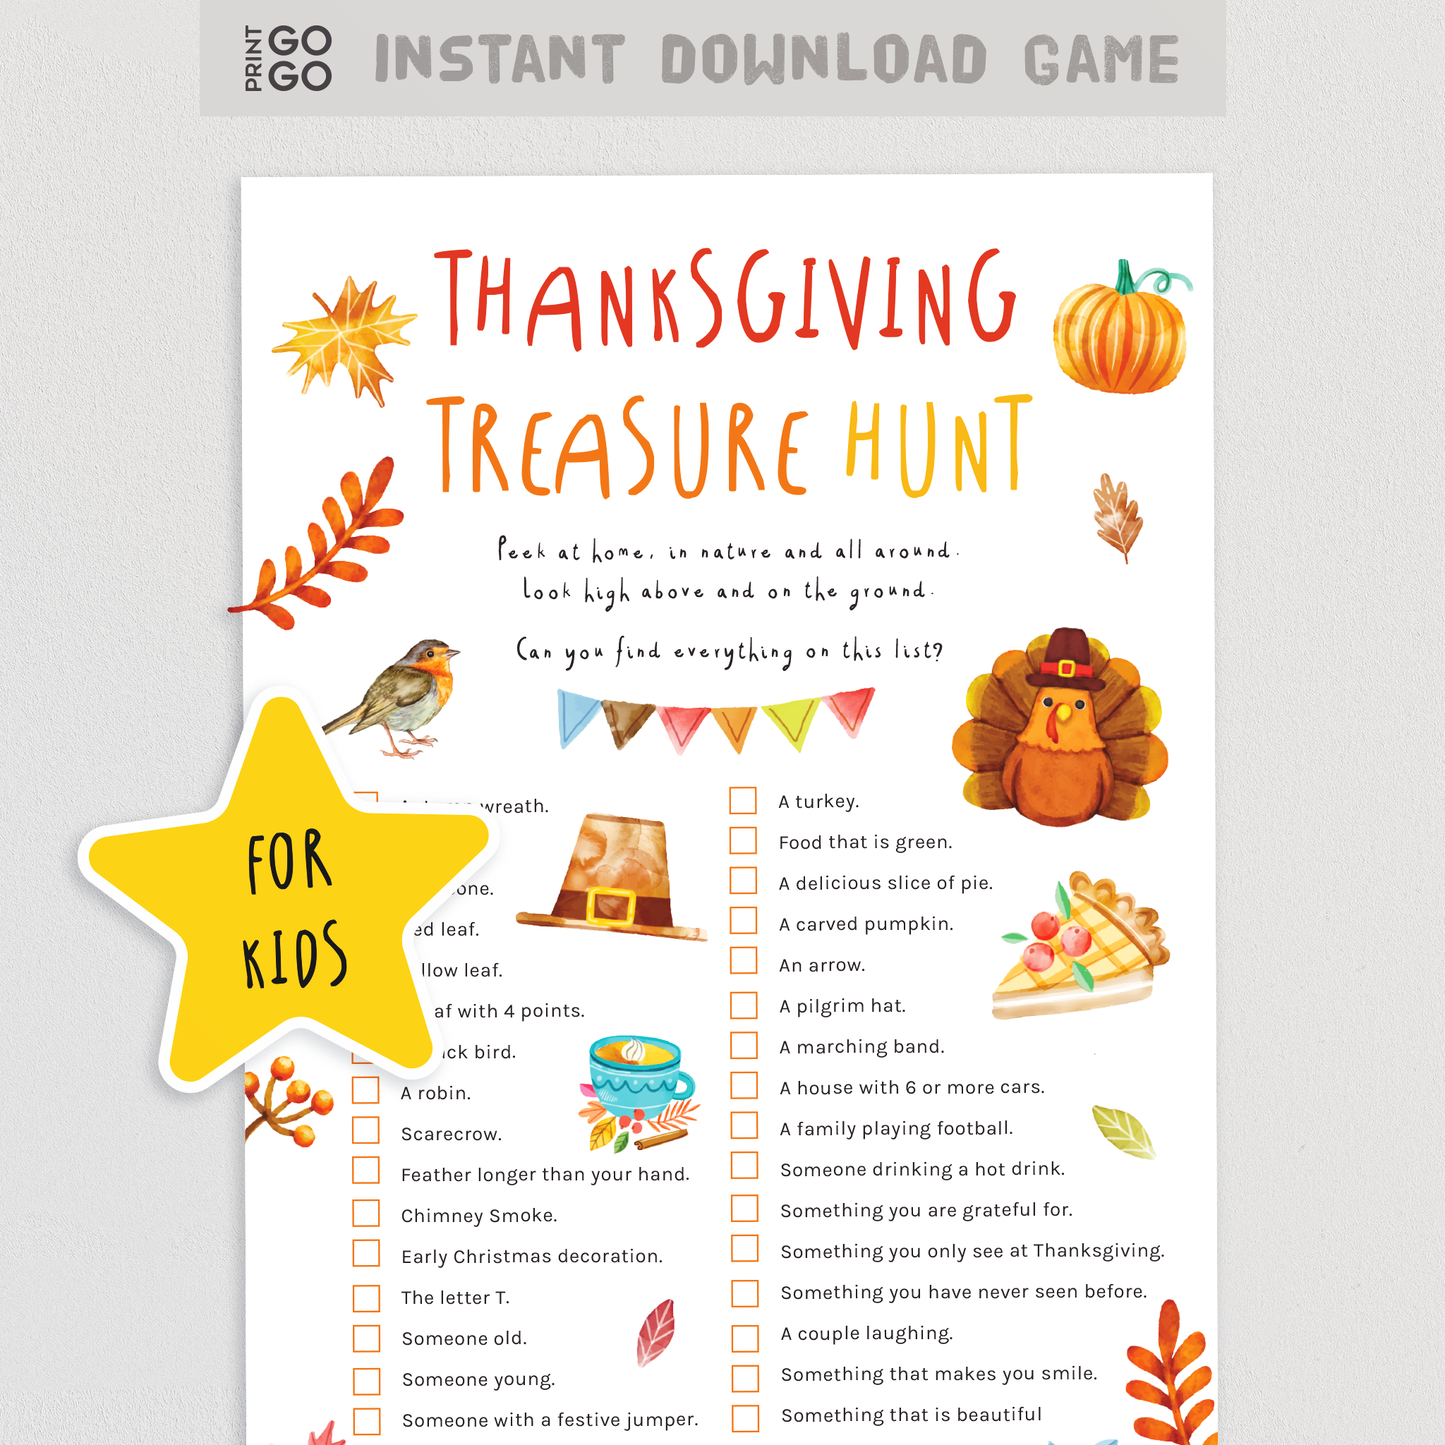 Thanksgiving Treasure Hunt for Kids